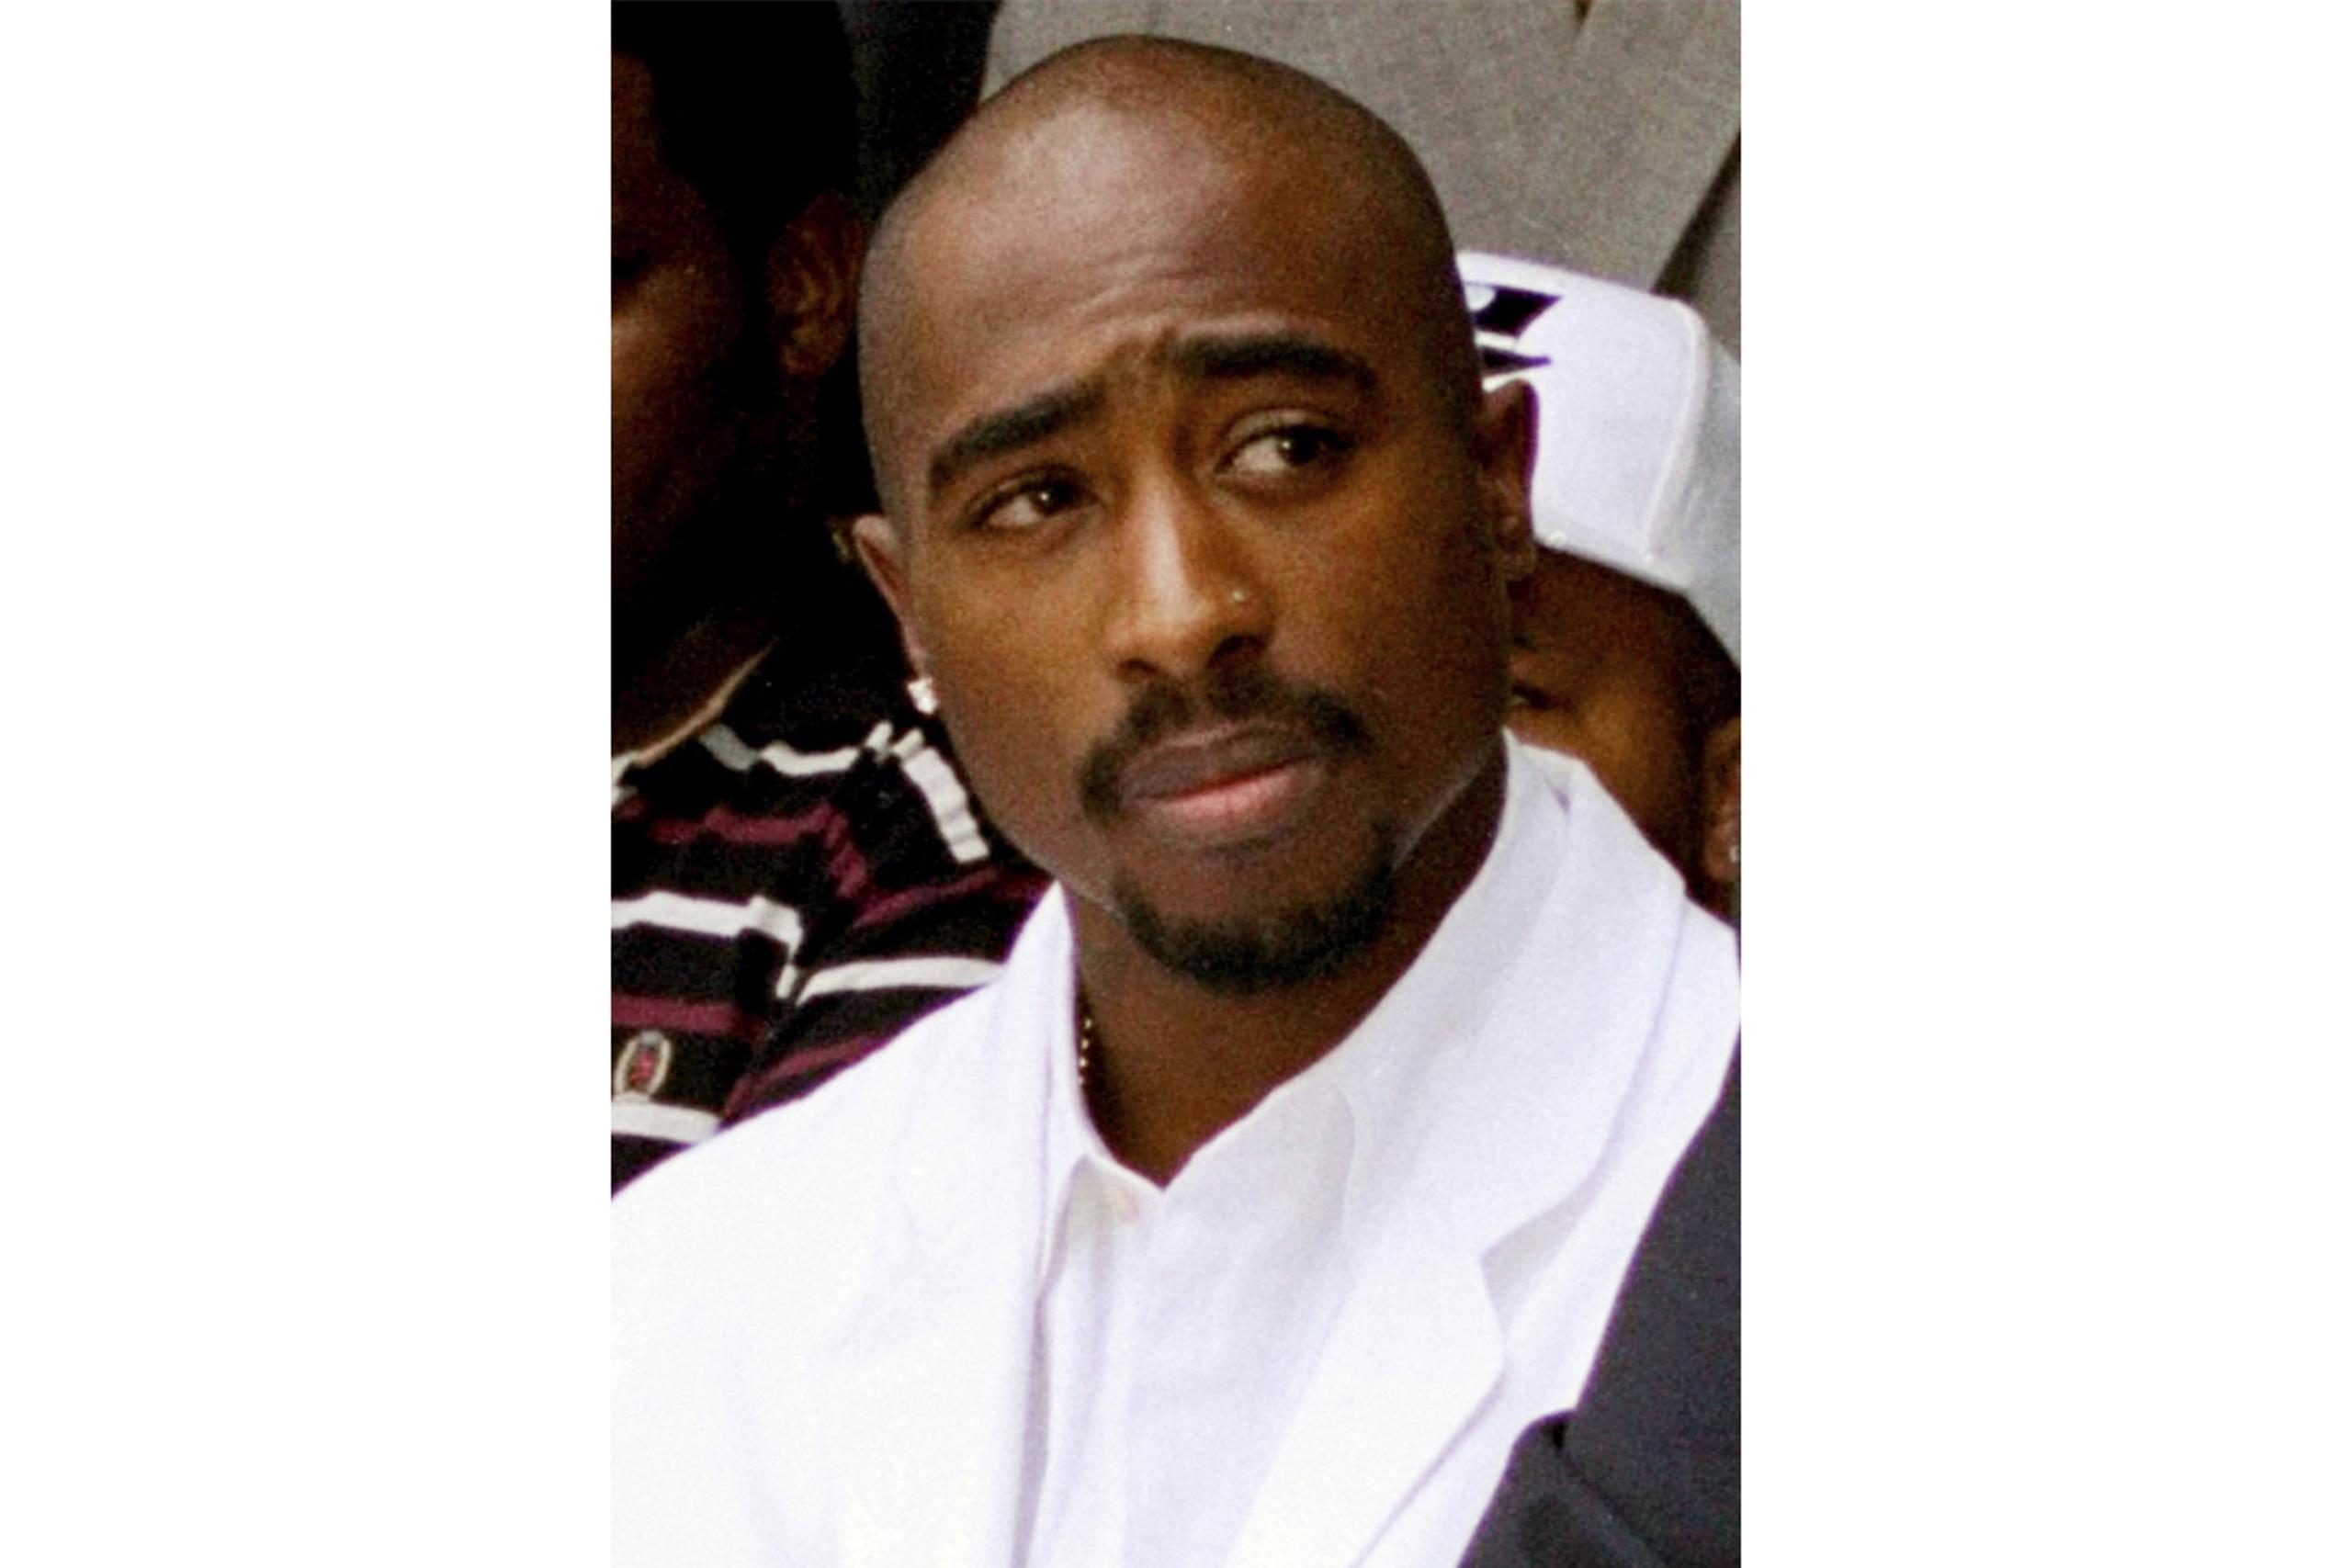 La detención de Duane "Keefe D" Davis" se convierte en el primer arresto relacionado al homicidio de Tupac Shakur.